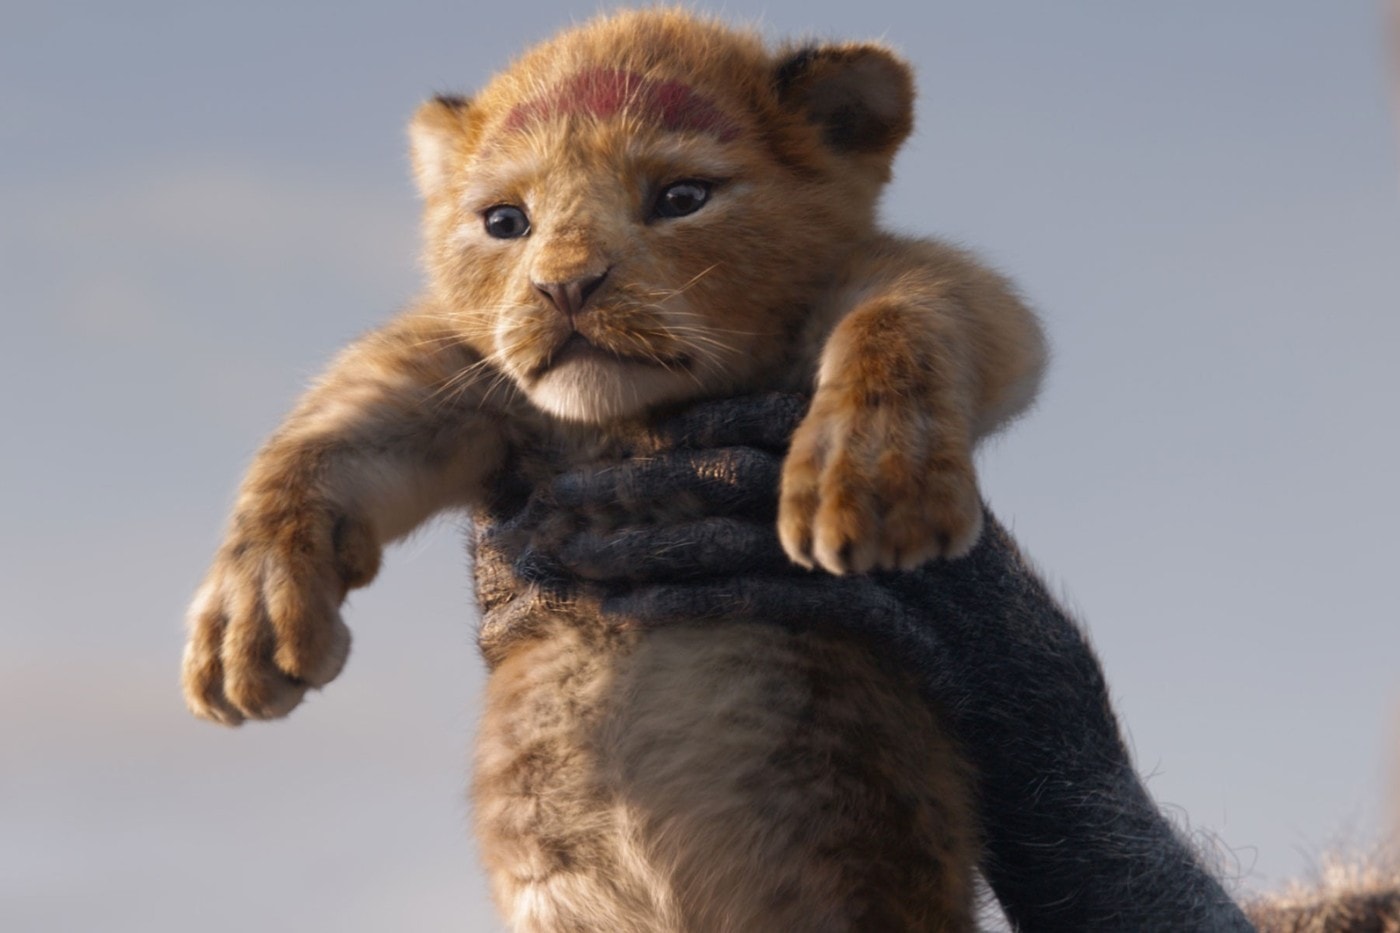 《The Lion King》正式超越《Frozen》成為全球票房最高動畫電影